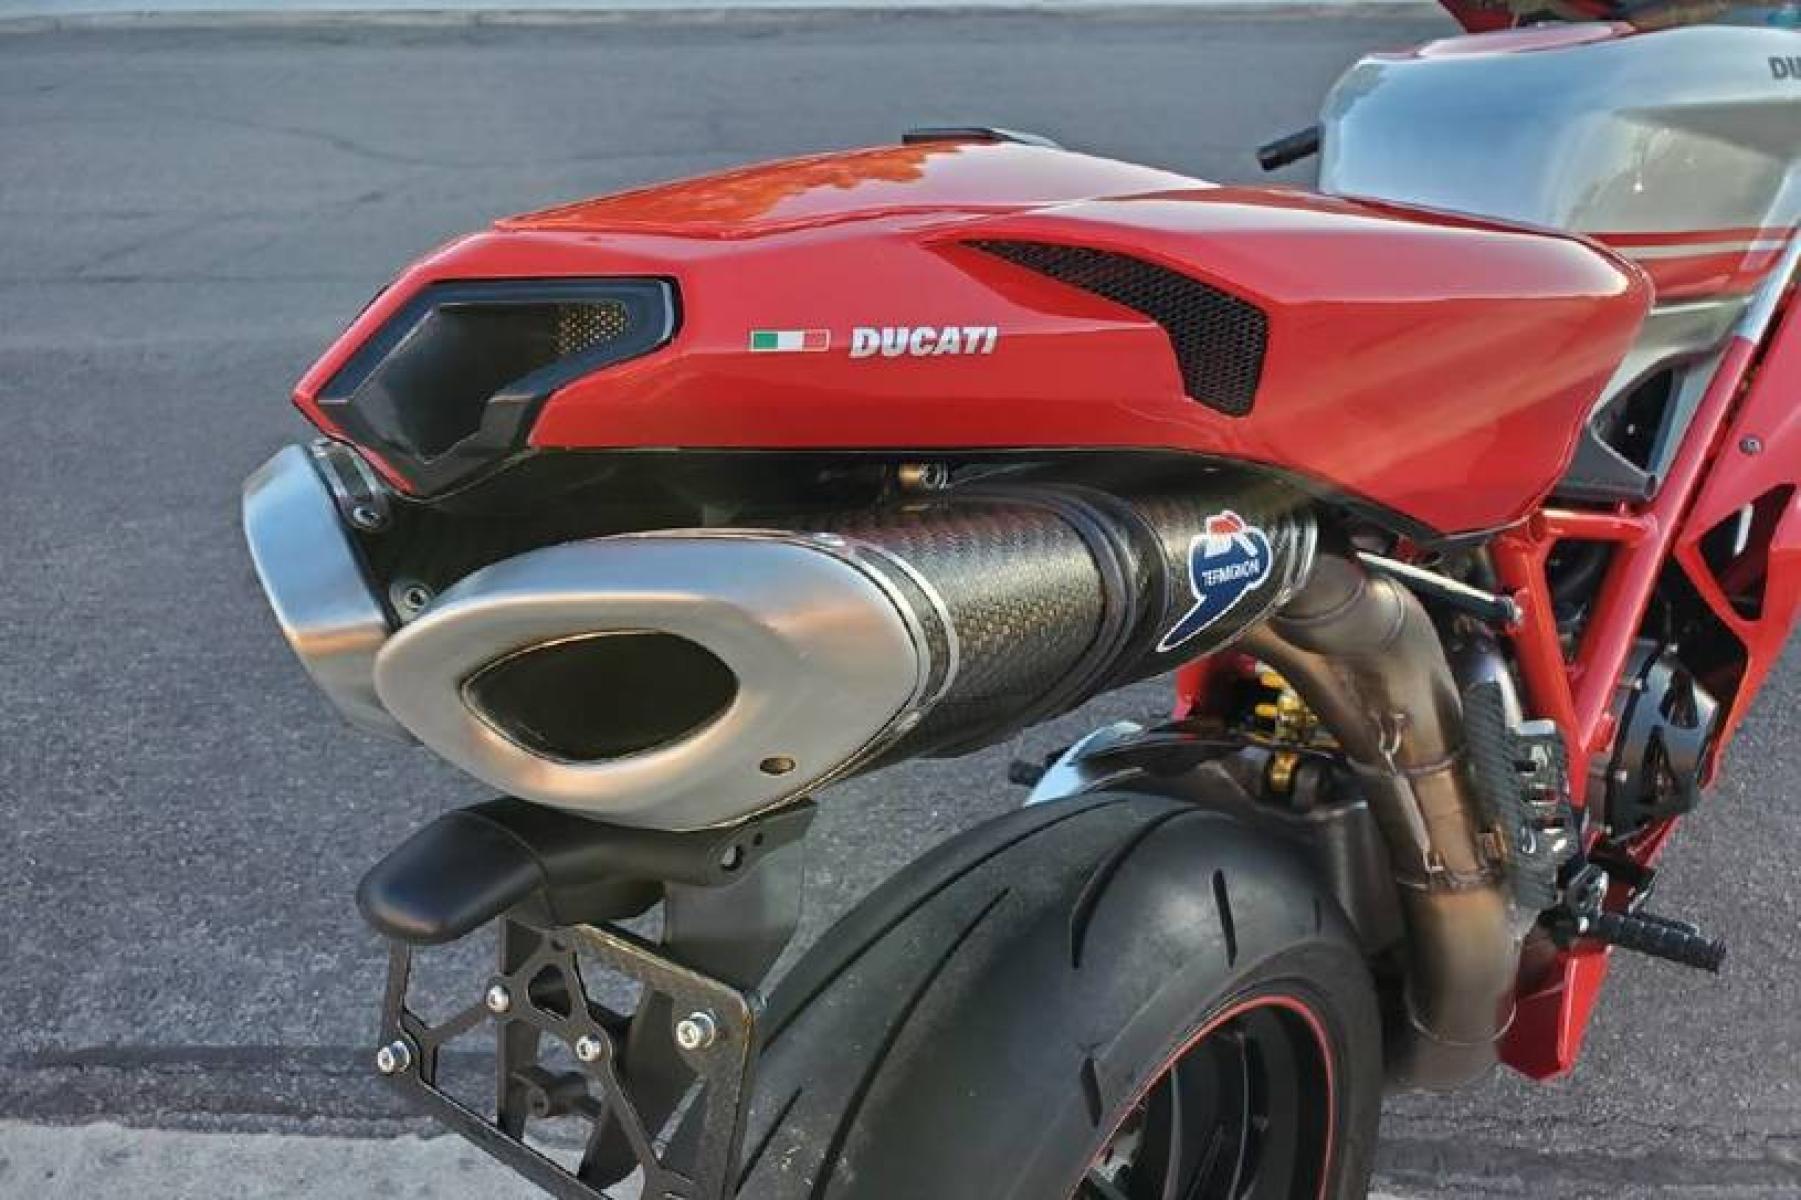 2008 Ducati 1099 S S (ZDM1XBEW18B) with an 1,098 cc L twin engine, Six-Speed Dry Clutch transmission, located at 3160 South Valley View Blvd, Las Vegas, NV, 89146, (888) 750-6845, 36.132458, -115.190247 - b64:VGhlIER1Y2F0aSAxMDk4UyBib2FzdHMgc29tZSBnb3JnZW91cyBib2R5d29yayBhbmQgc2xpY2sgZGVzaWduIGN1ZXMsIGJ1dCBpdHMgcmVhbCBtYXN0ZXJwaWVjZSBsaWVzIGJlbmVhdGggdGhvc2UgcHJldHR5IHBsYXN0aWMgcGFuZWxzLiBVbmRlcm5lYXRoIGlzIGEgdHVidWxhciBzdGVlbCB0cmVsbGlzIGZyYW1lIG9wdGltaXplZCBmb3Igc3RpZmZuZXNzLCBhbmQgYW4gTC10d2luIGVu - Photo #10